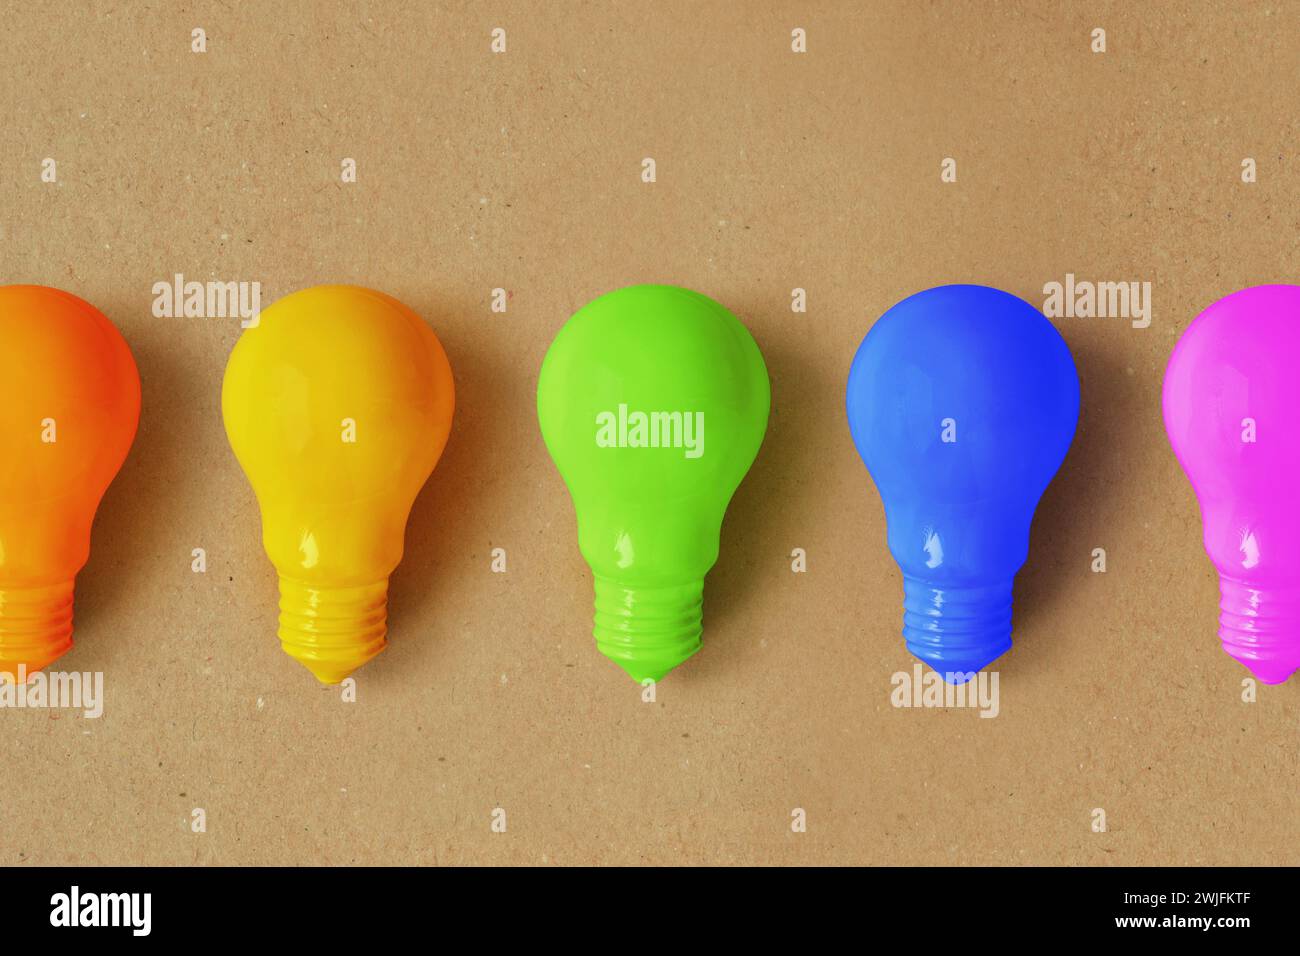 Glühbirnen in verschiedenen Farben auf Recyclingpapierhintergrund - Vorstellung von Kreativität und divergentem Denken Stockfoto